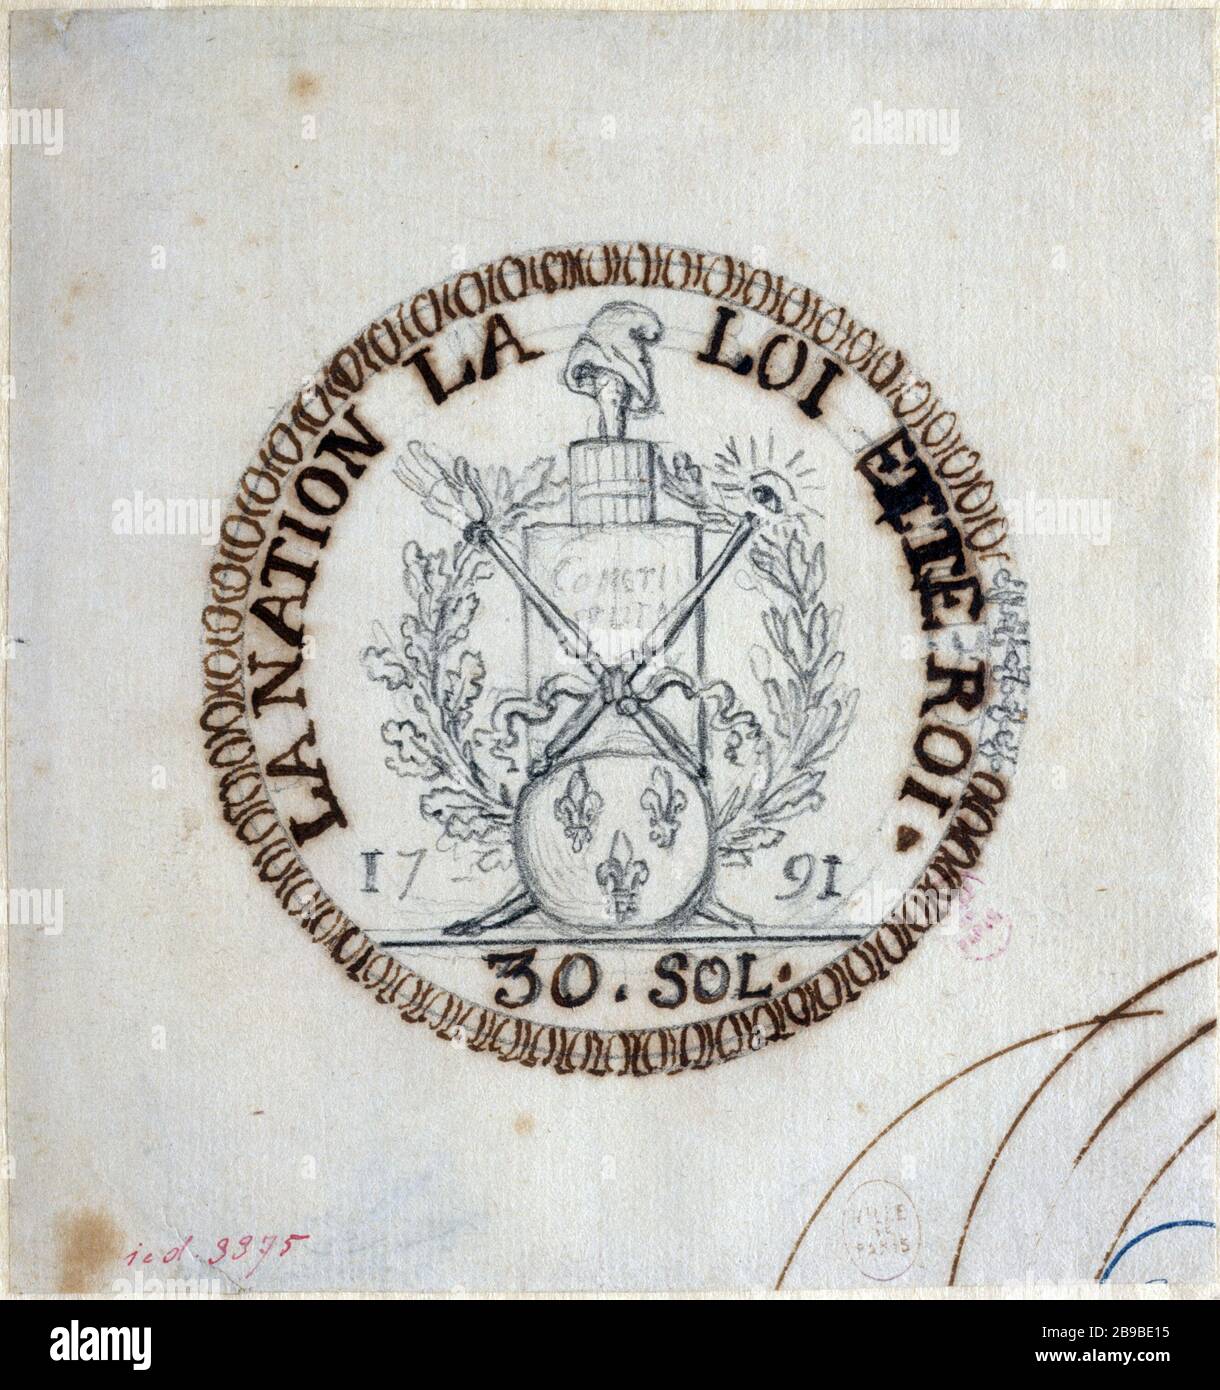 PROYECTO COIN 30 PLANTAS Augustin Dupre (1748-1833). 'Projet de monnaie de 30 sols de 1791'. París, musée Carnavalet. Foto de stock